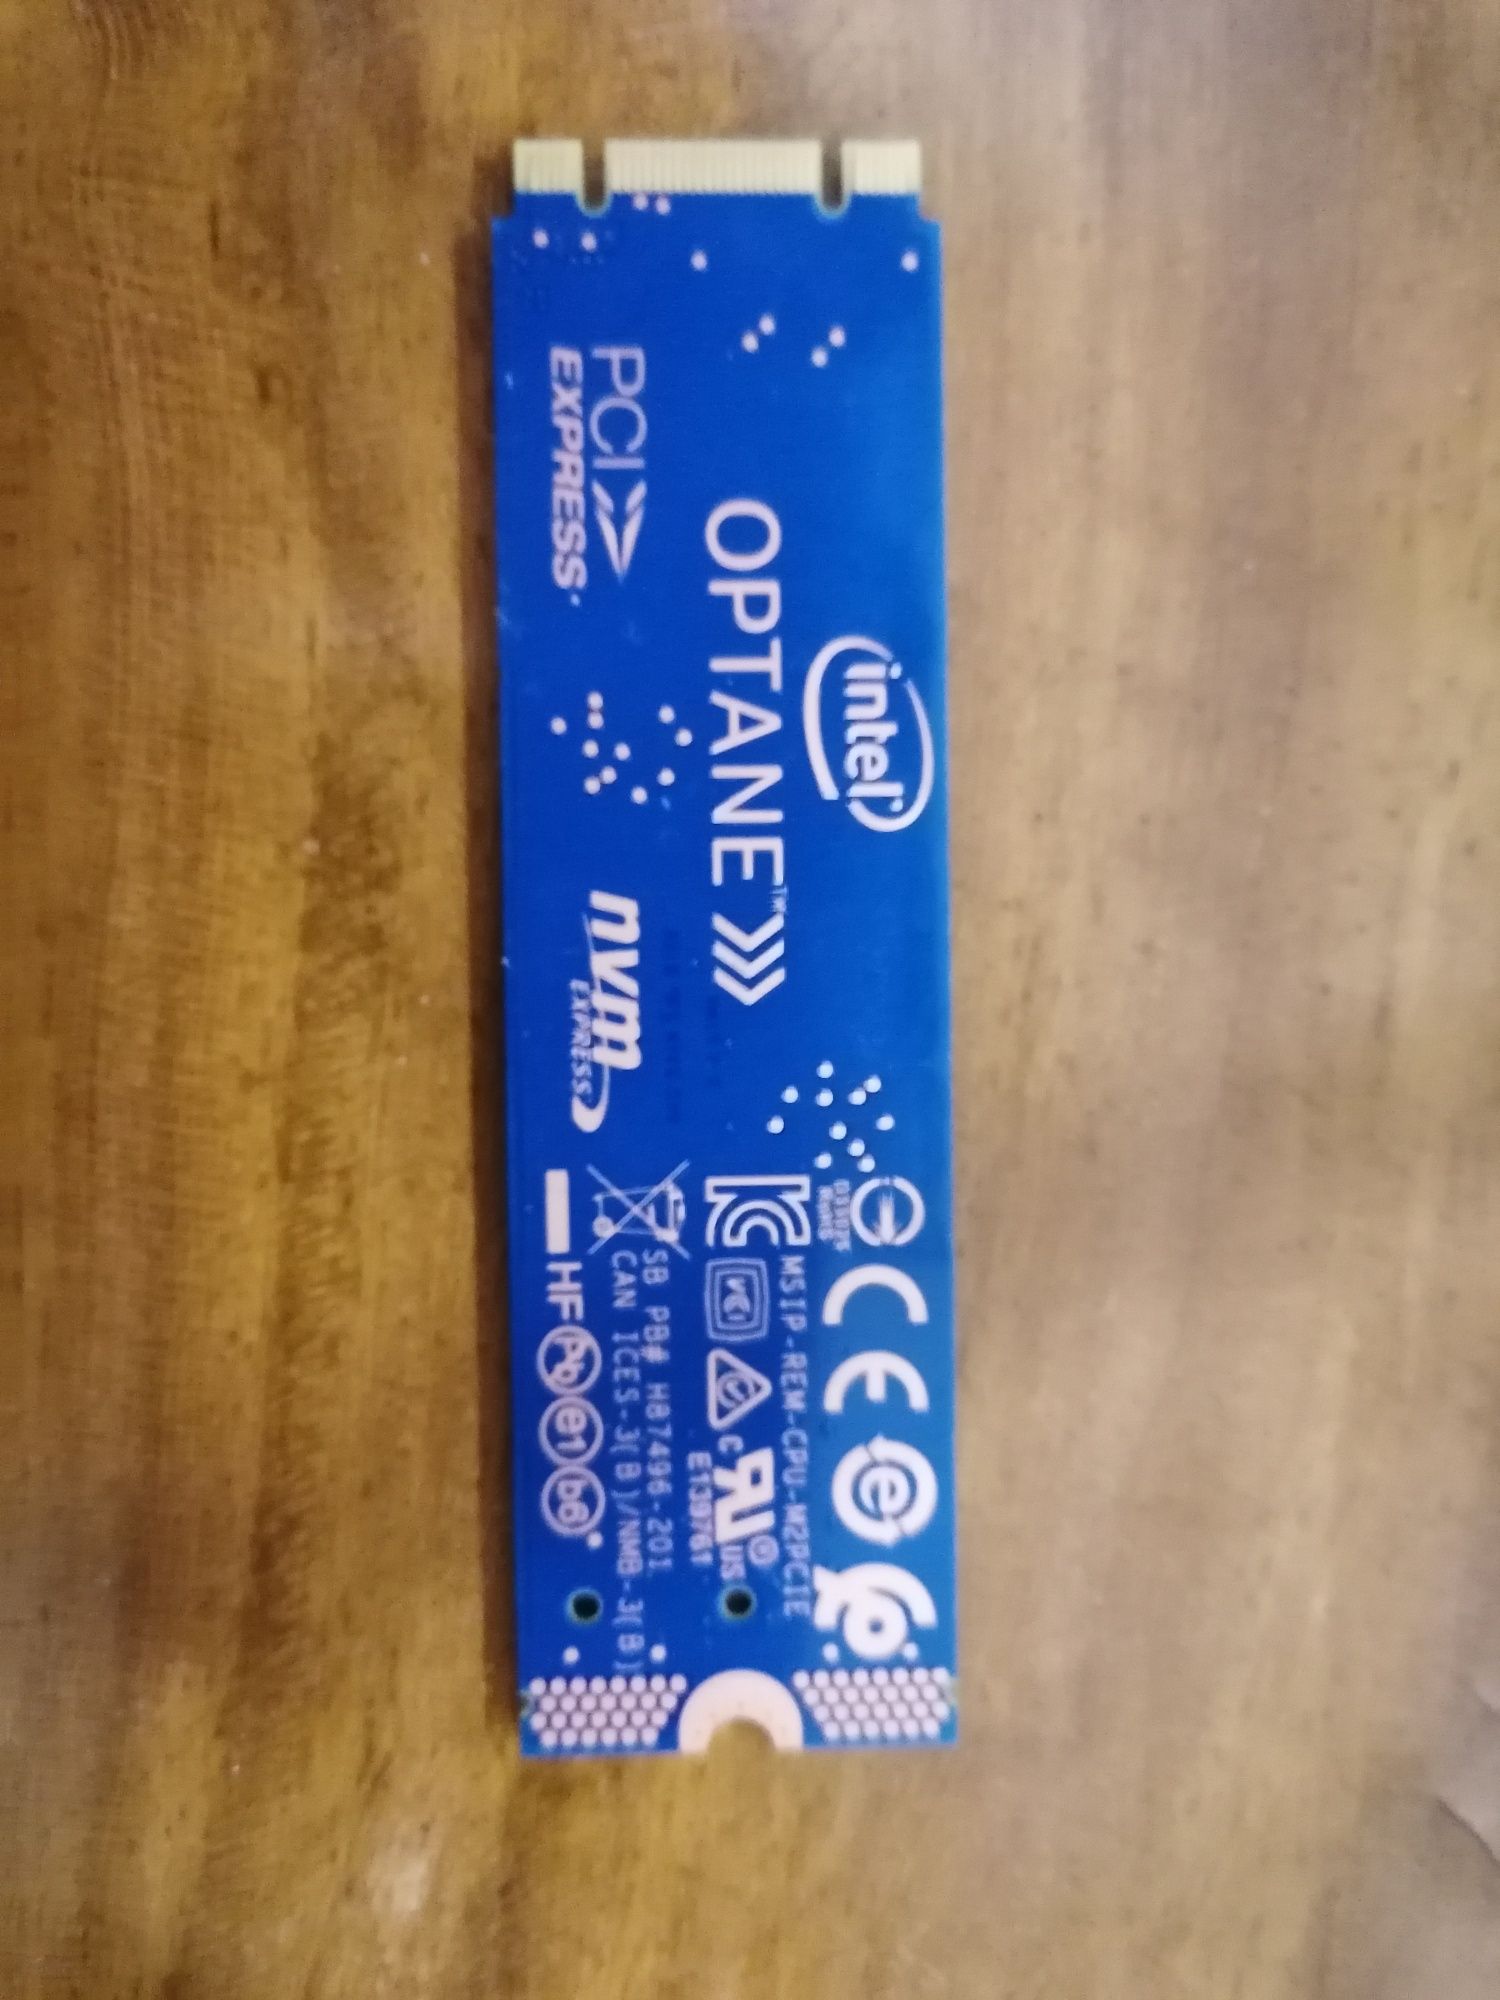 Intel Optane Memory M10 16GB